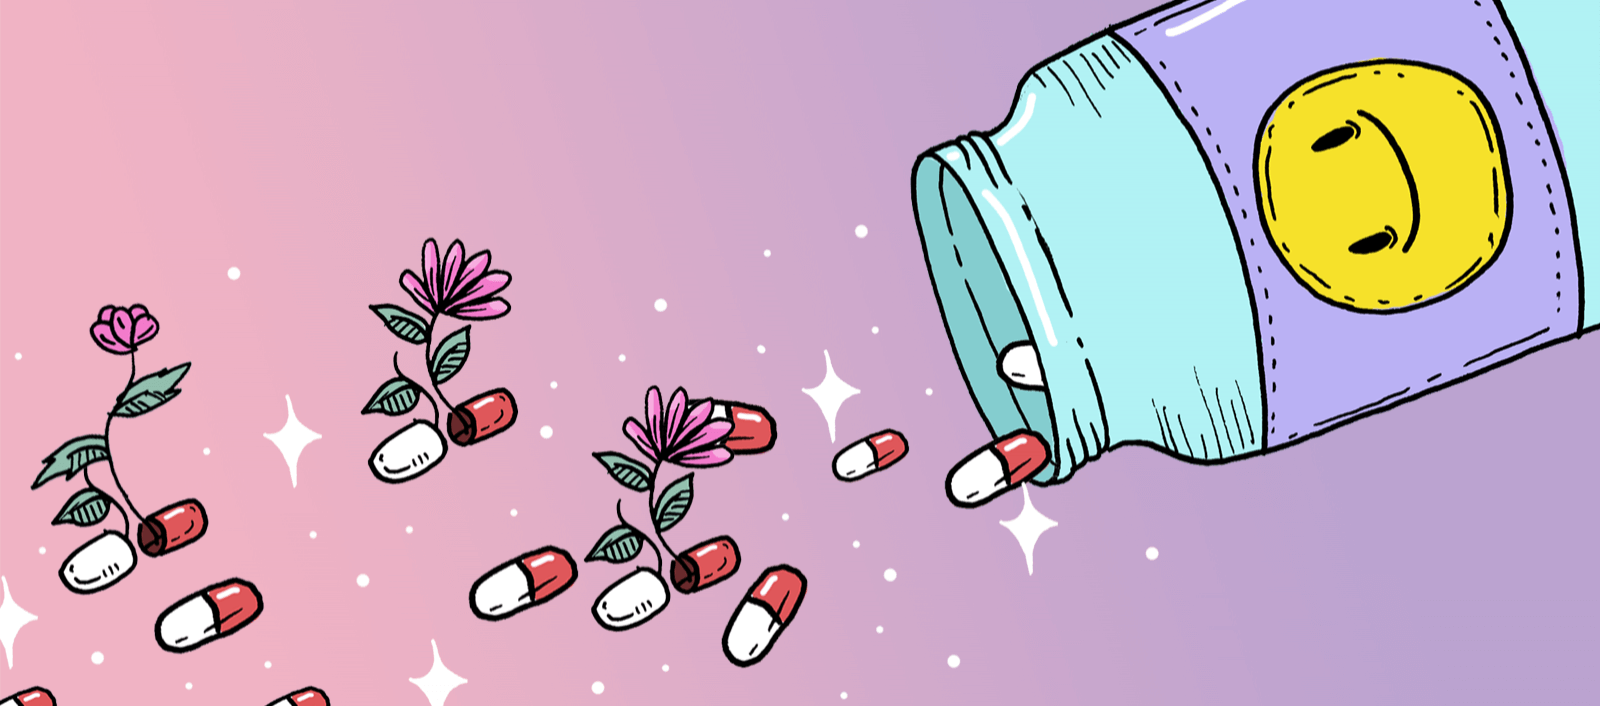 抗压力药物——什么药物可以缓解压力?